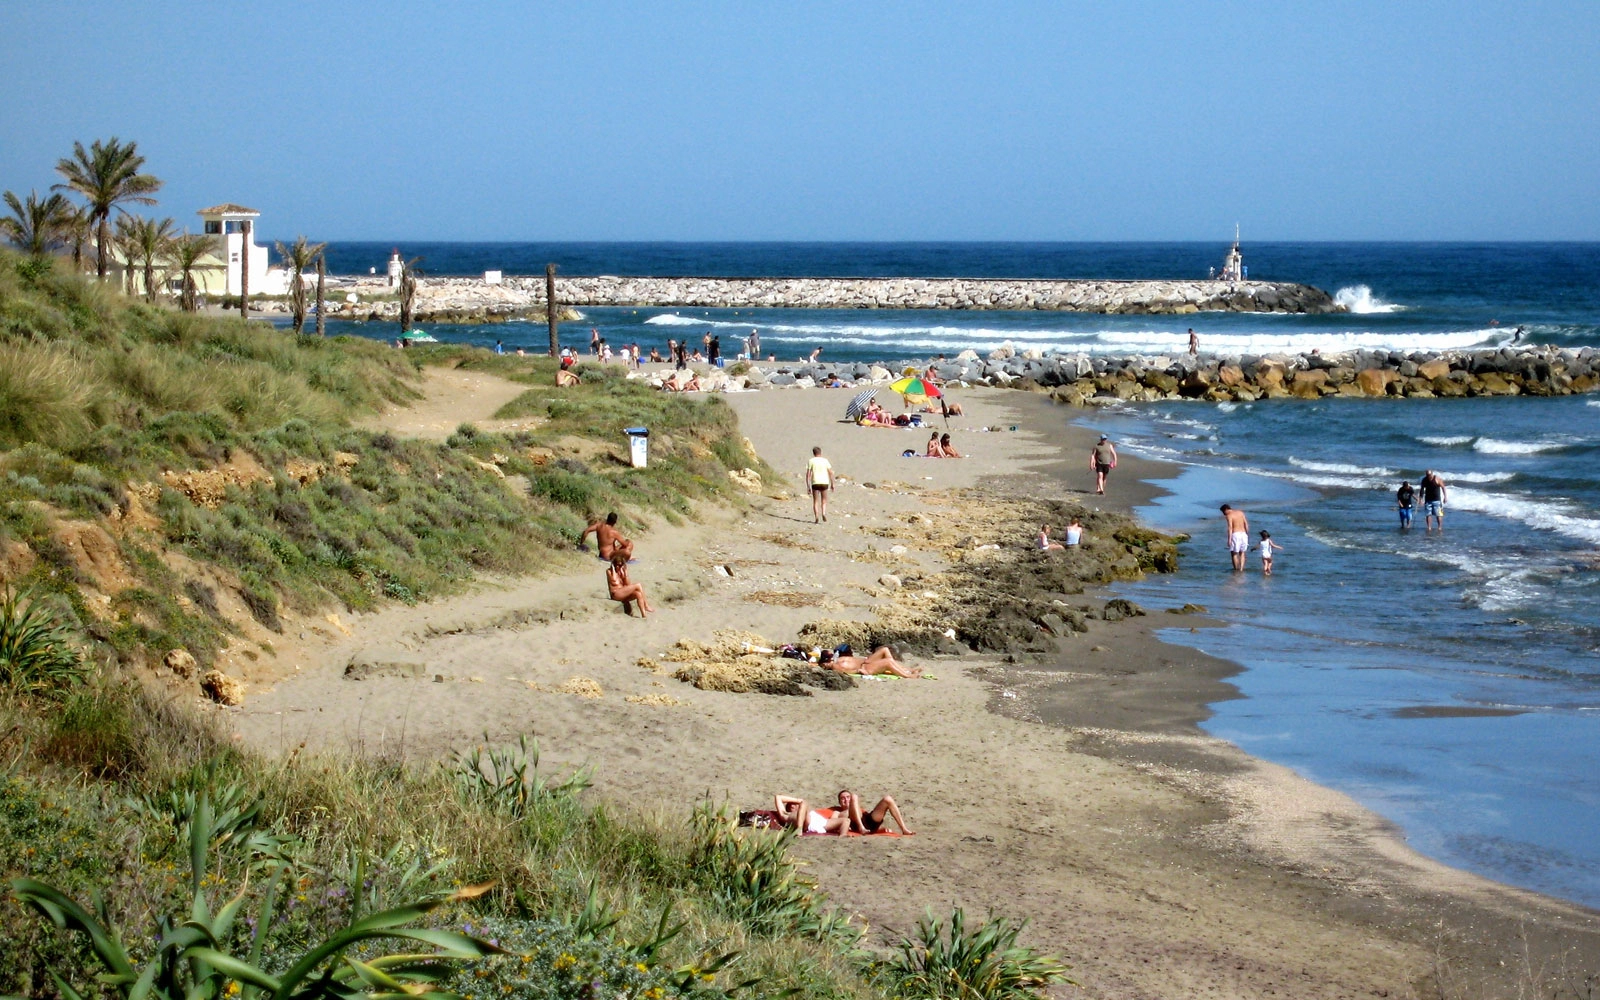 Playa de Artola tenger hőmérséklete